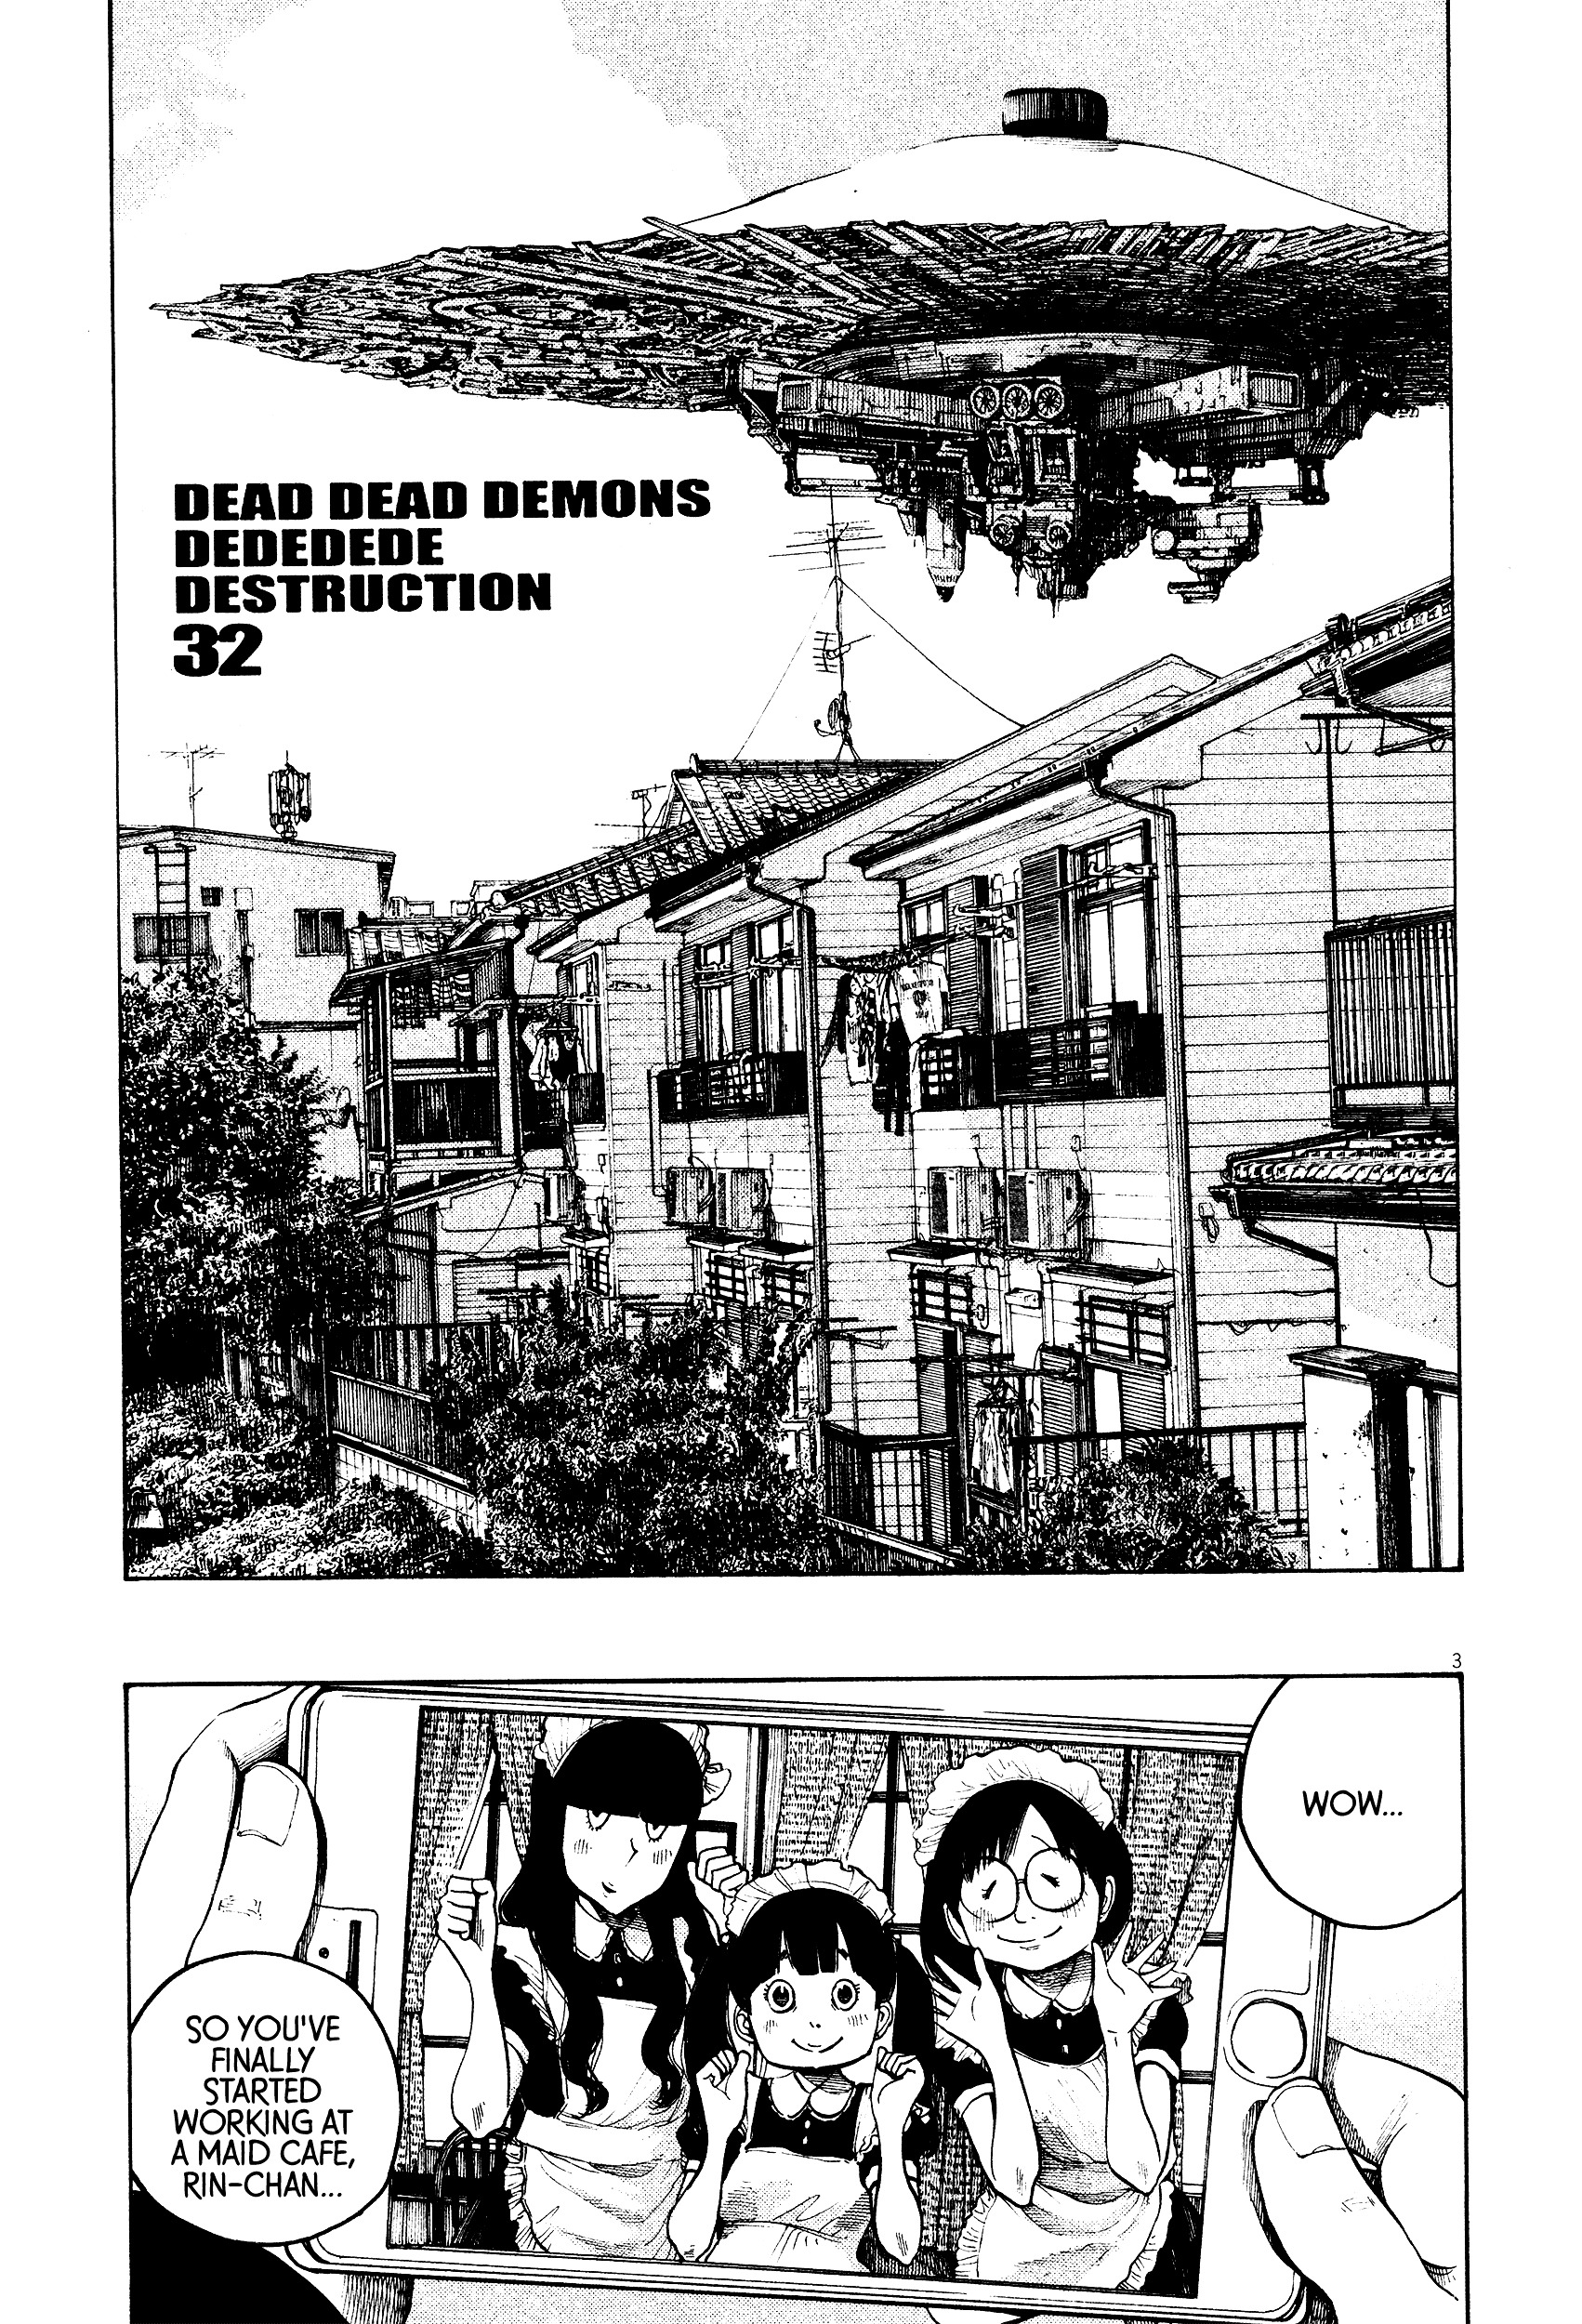 Dead Dead Demon's Dededededestruction vol.4 ch.32